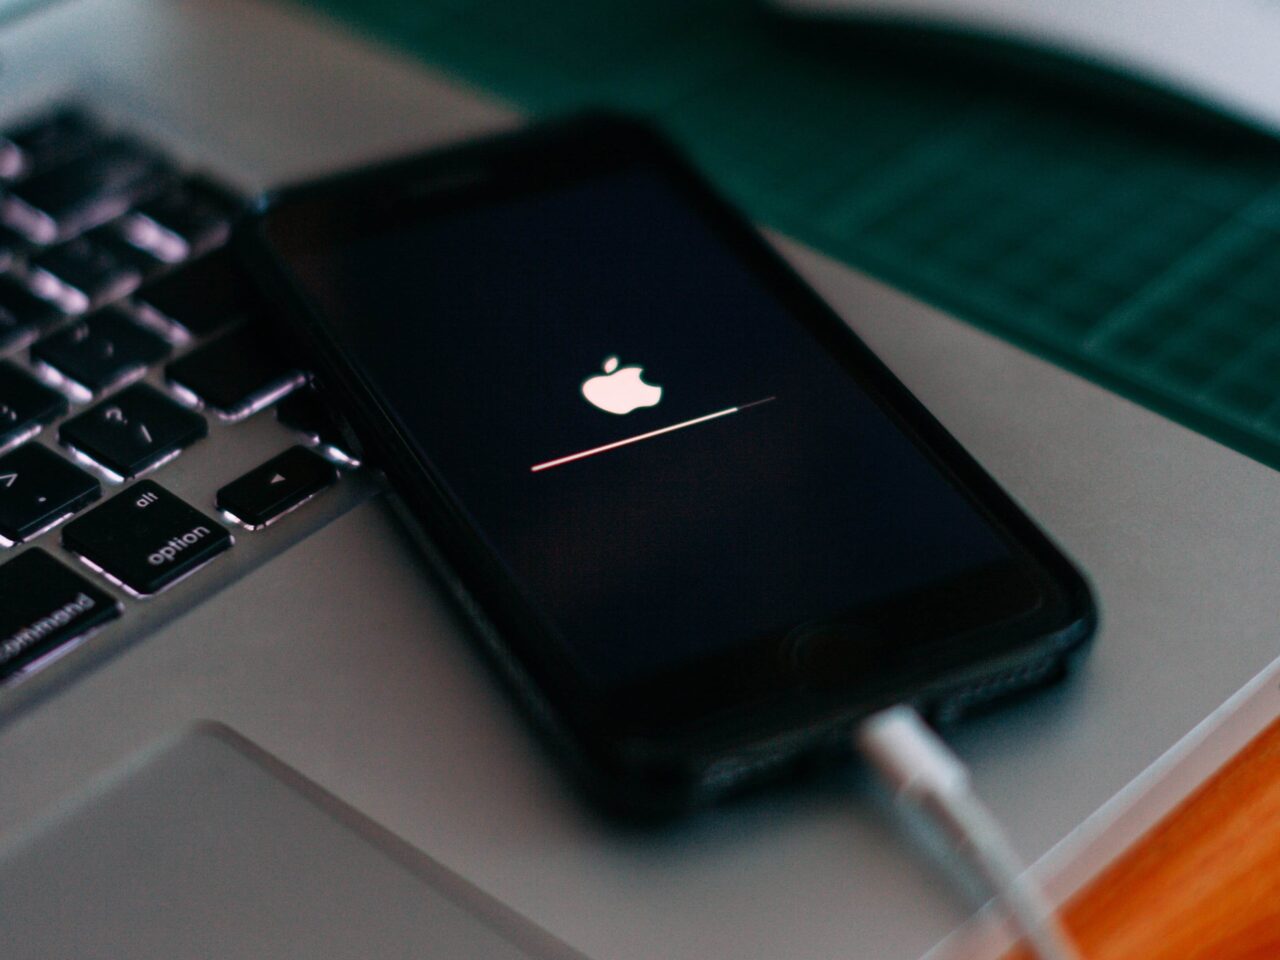 Cyberprzestępcy mogą spalić twój telefon. Czarny smartfon leżący na klawiaturze laptopa, wyświetlany jest ekran ładowania systemu z logo Apple.